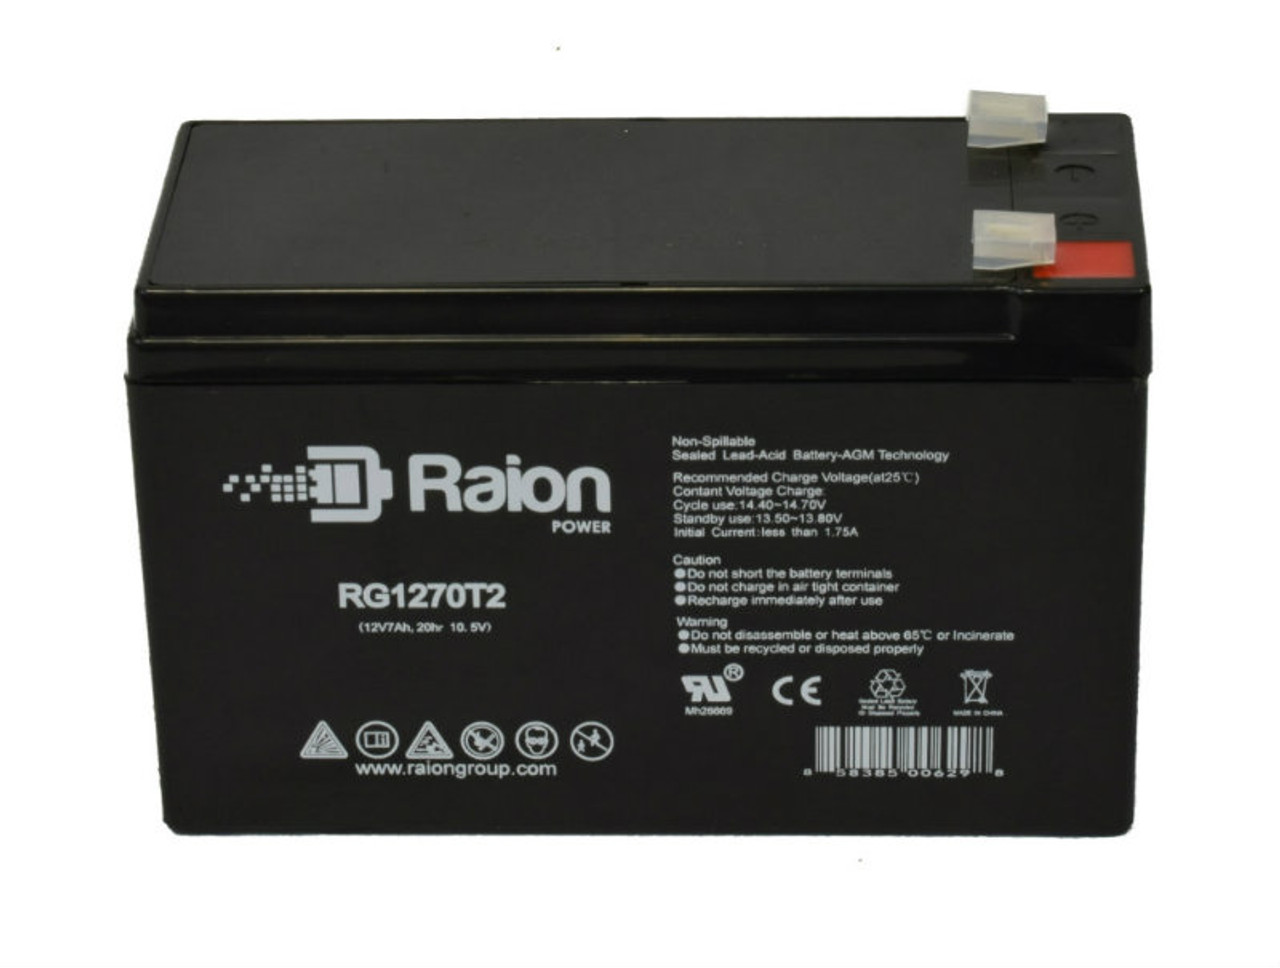 Raion Power RG1270T2 12V 7Ah Lead Acid Battery for KSTAR 6-FM-7